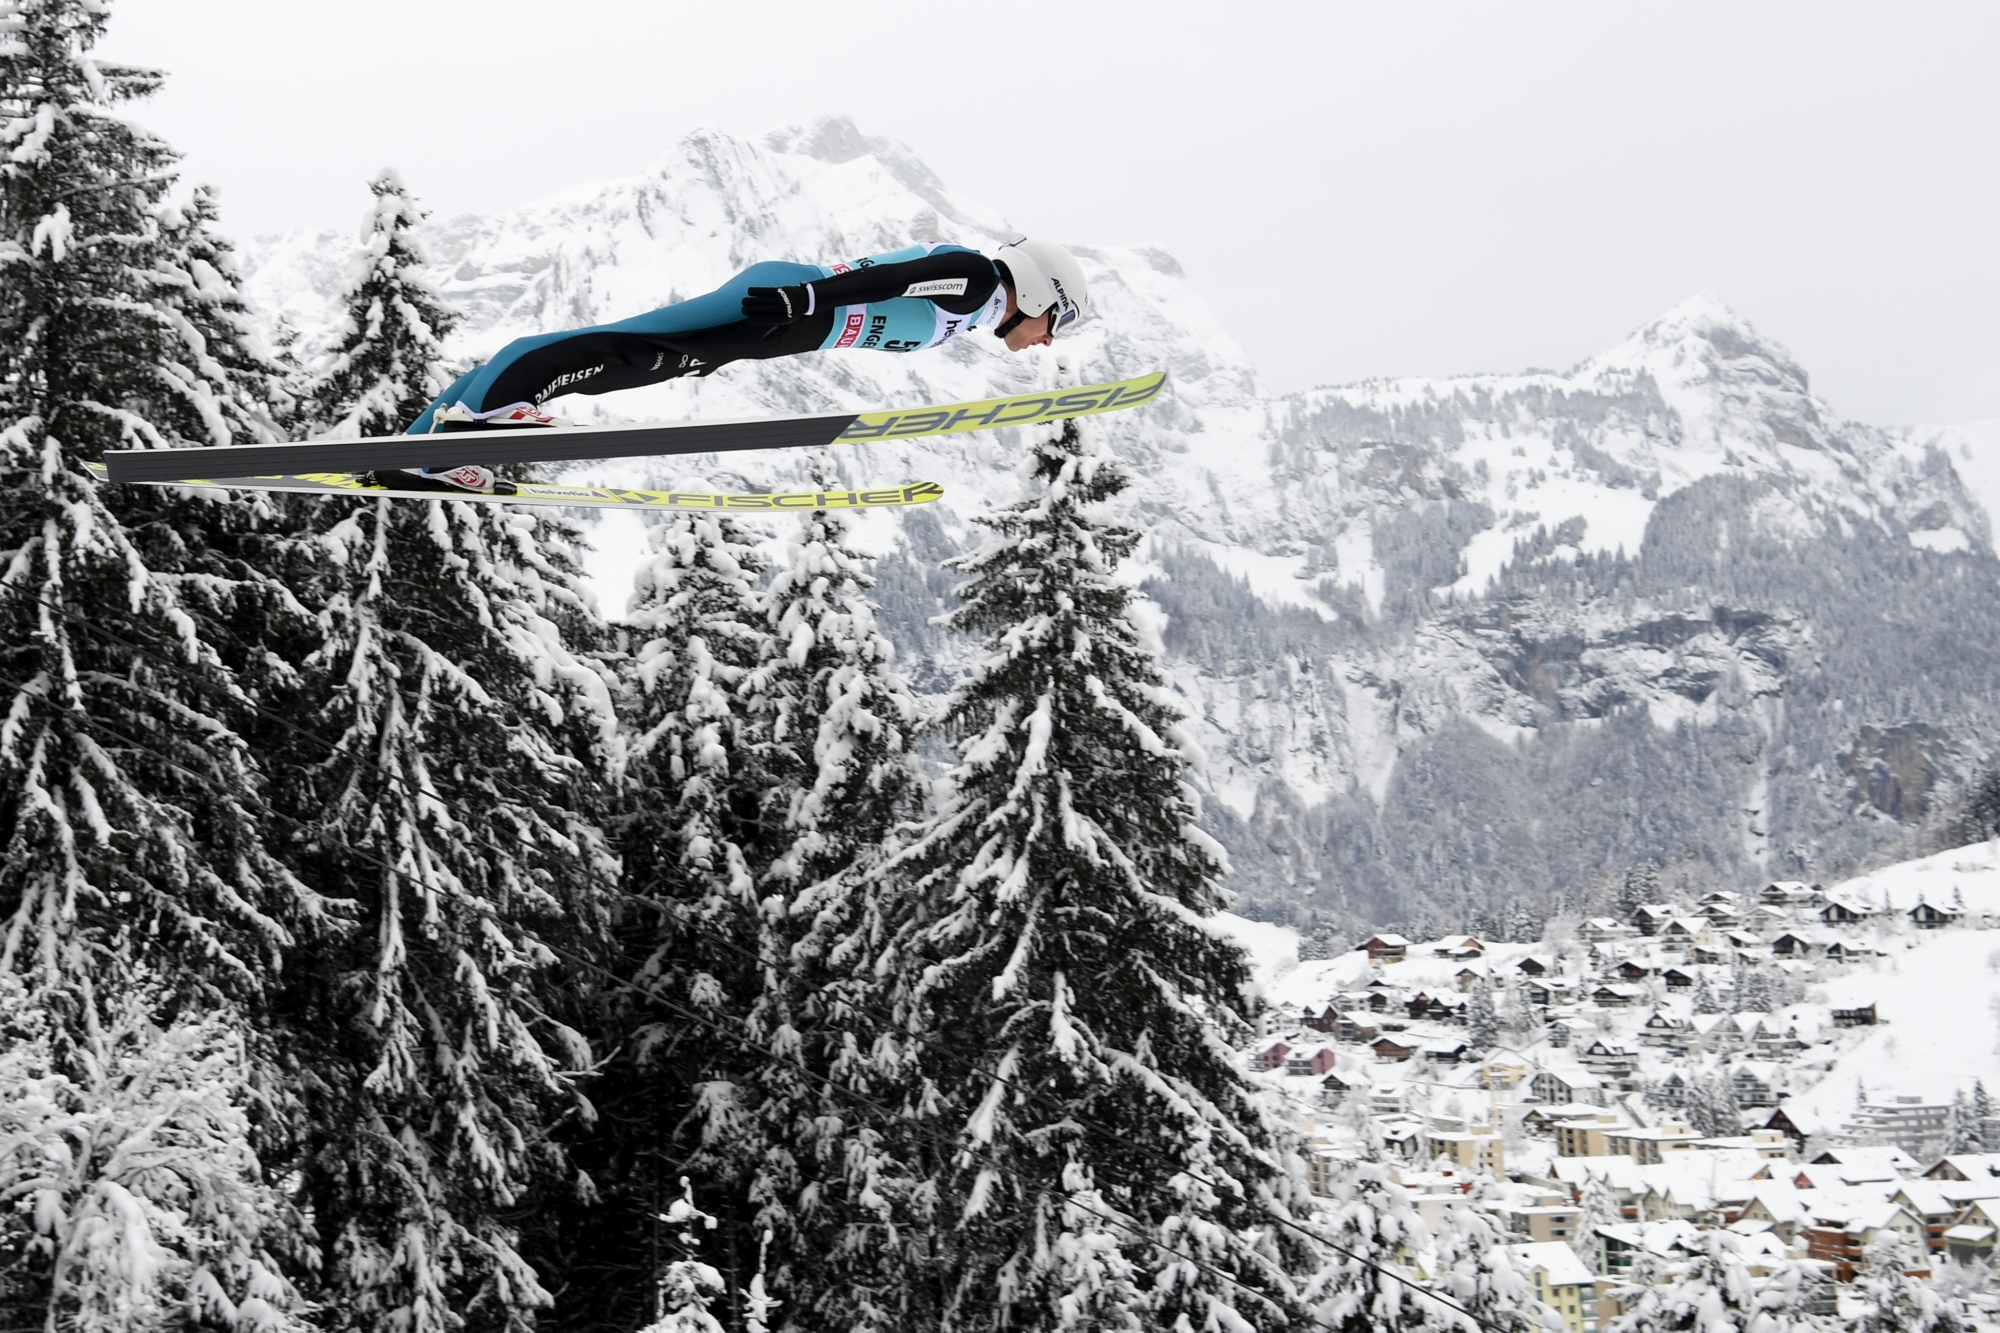 Simon Ammann of Switzerland jumps during the men's ski jumping FIS World Cup at the Titlisschanze in Engelberg, Switzerland, on Sunday, December 17, 2017. (KEYSTONE/Gian Ehrenzeller)ammann SKISPRINGEN WELTCUP 2017/18 ENGELBERG